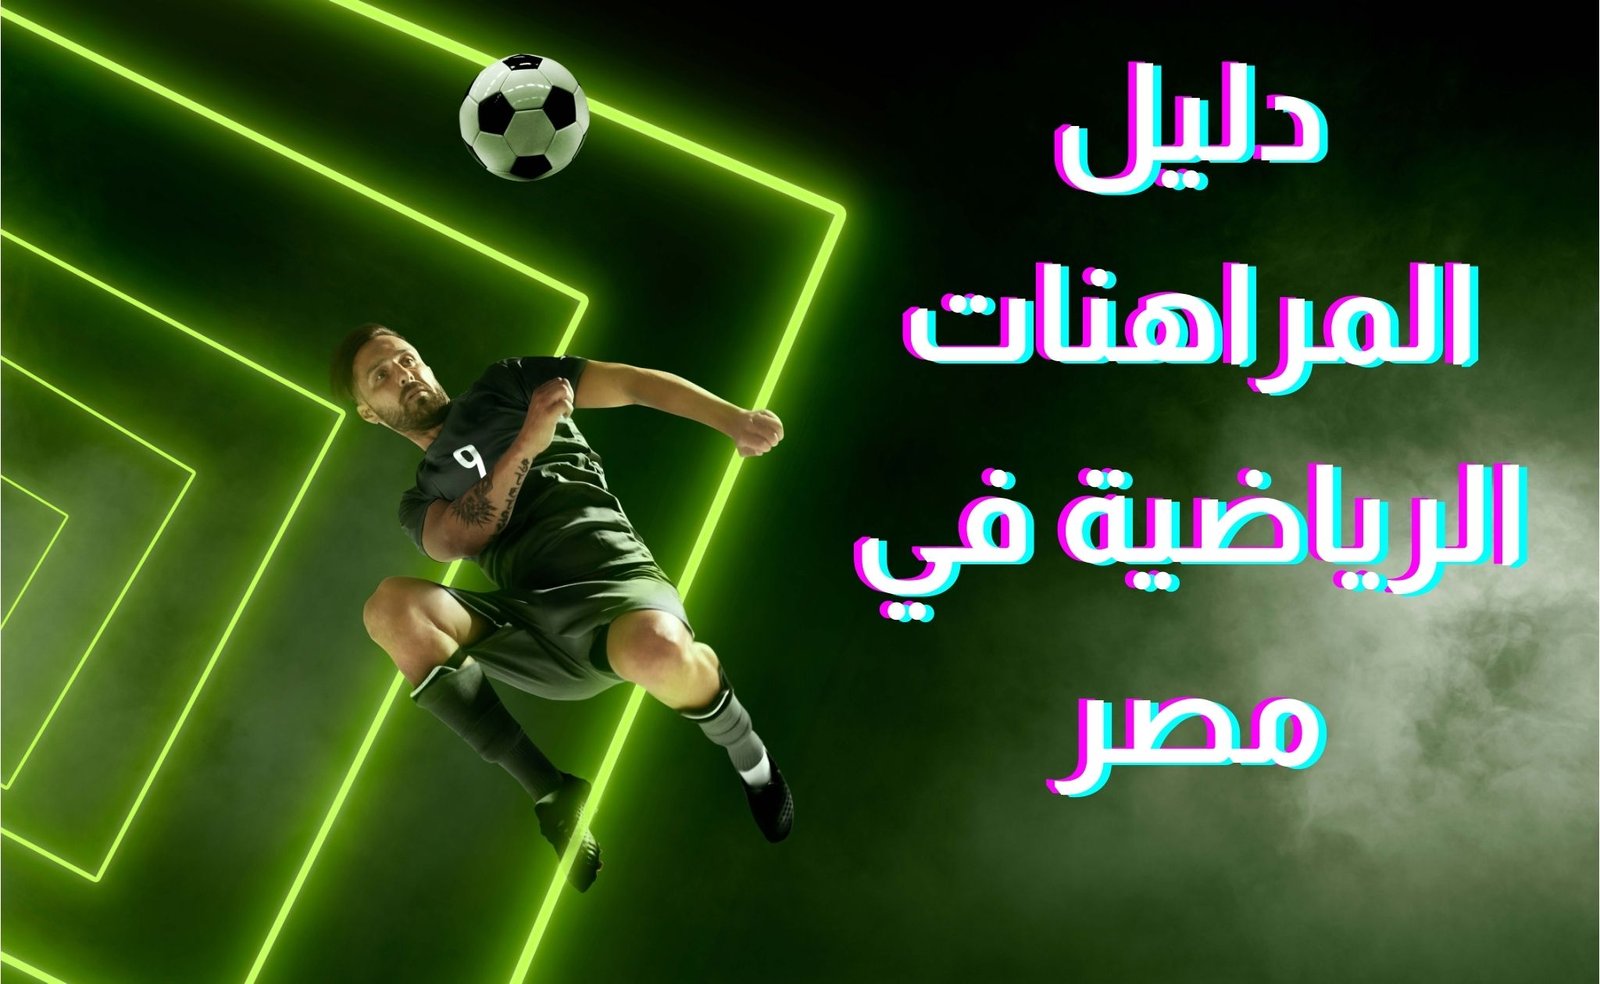 دليل المراهنات الرياضية في مصر